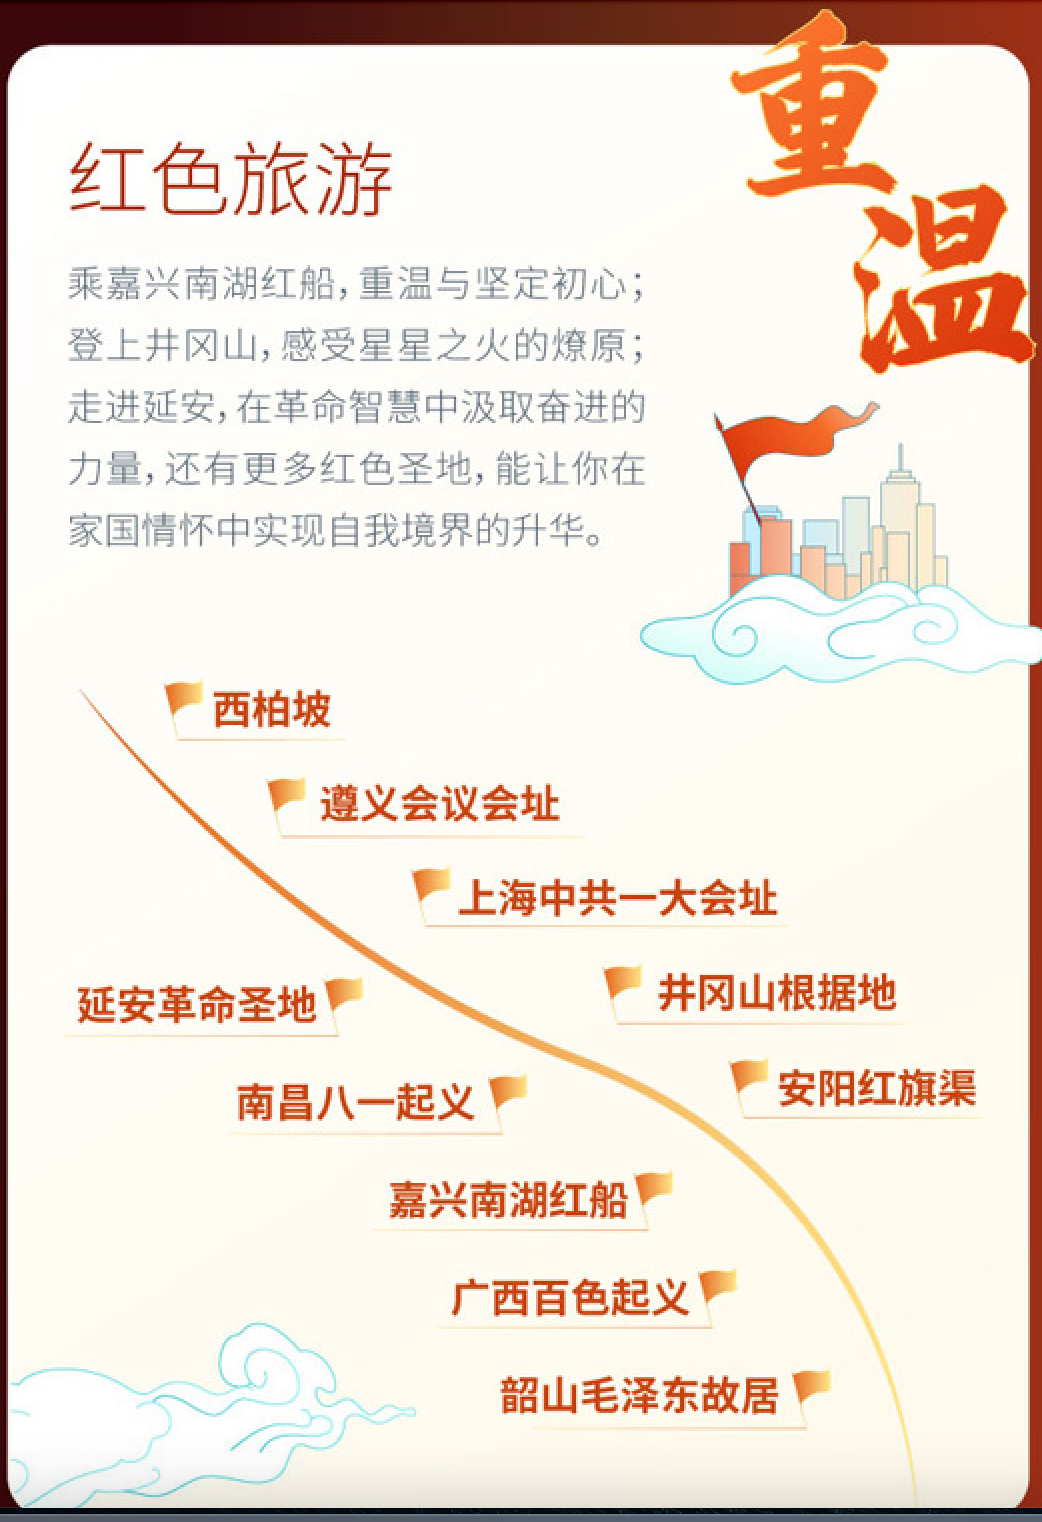 嘀嗒顺风车2021国庆旅游预测 带你透过小车窗 领略大中国